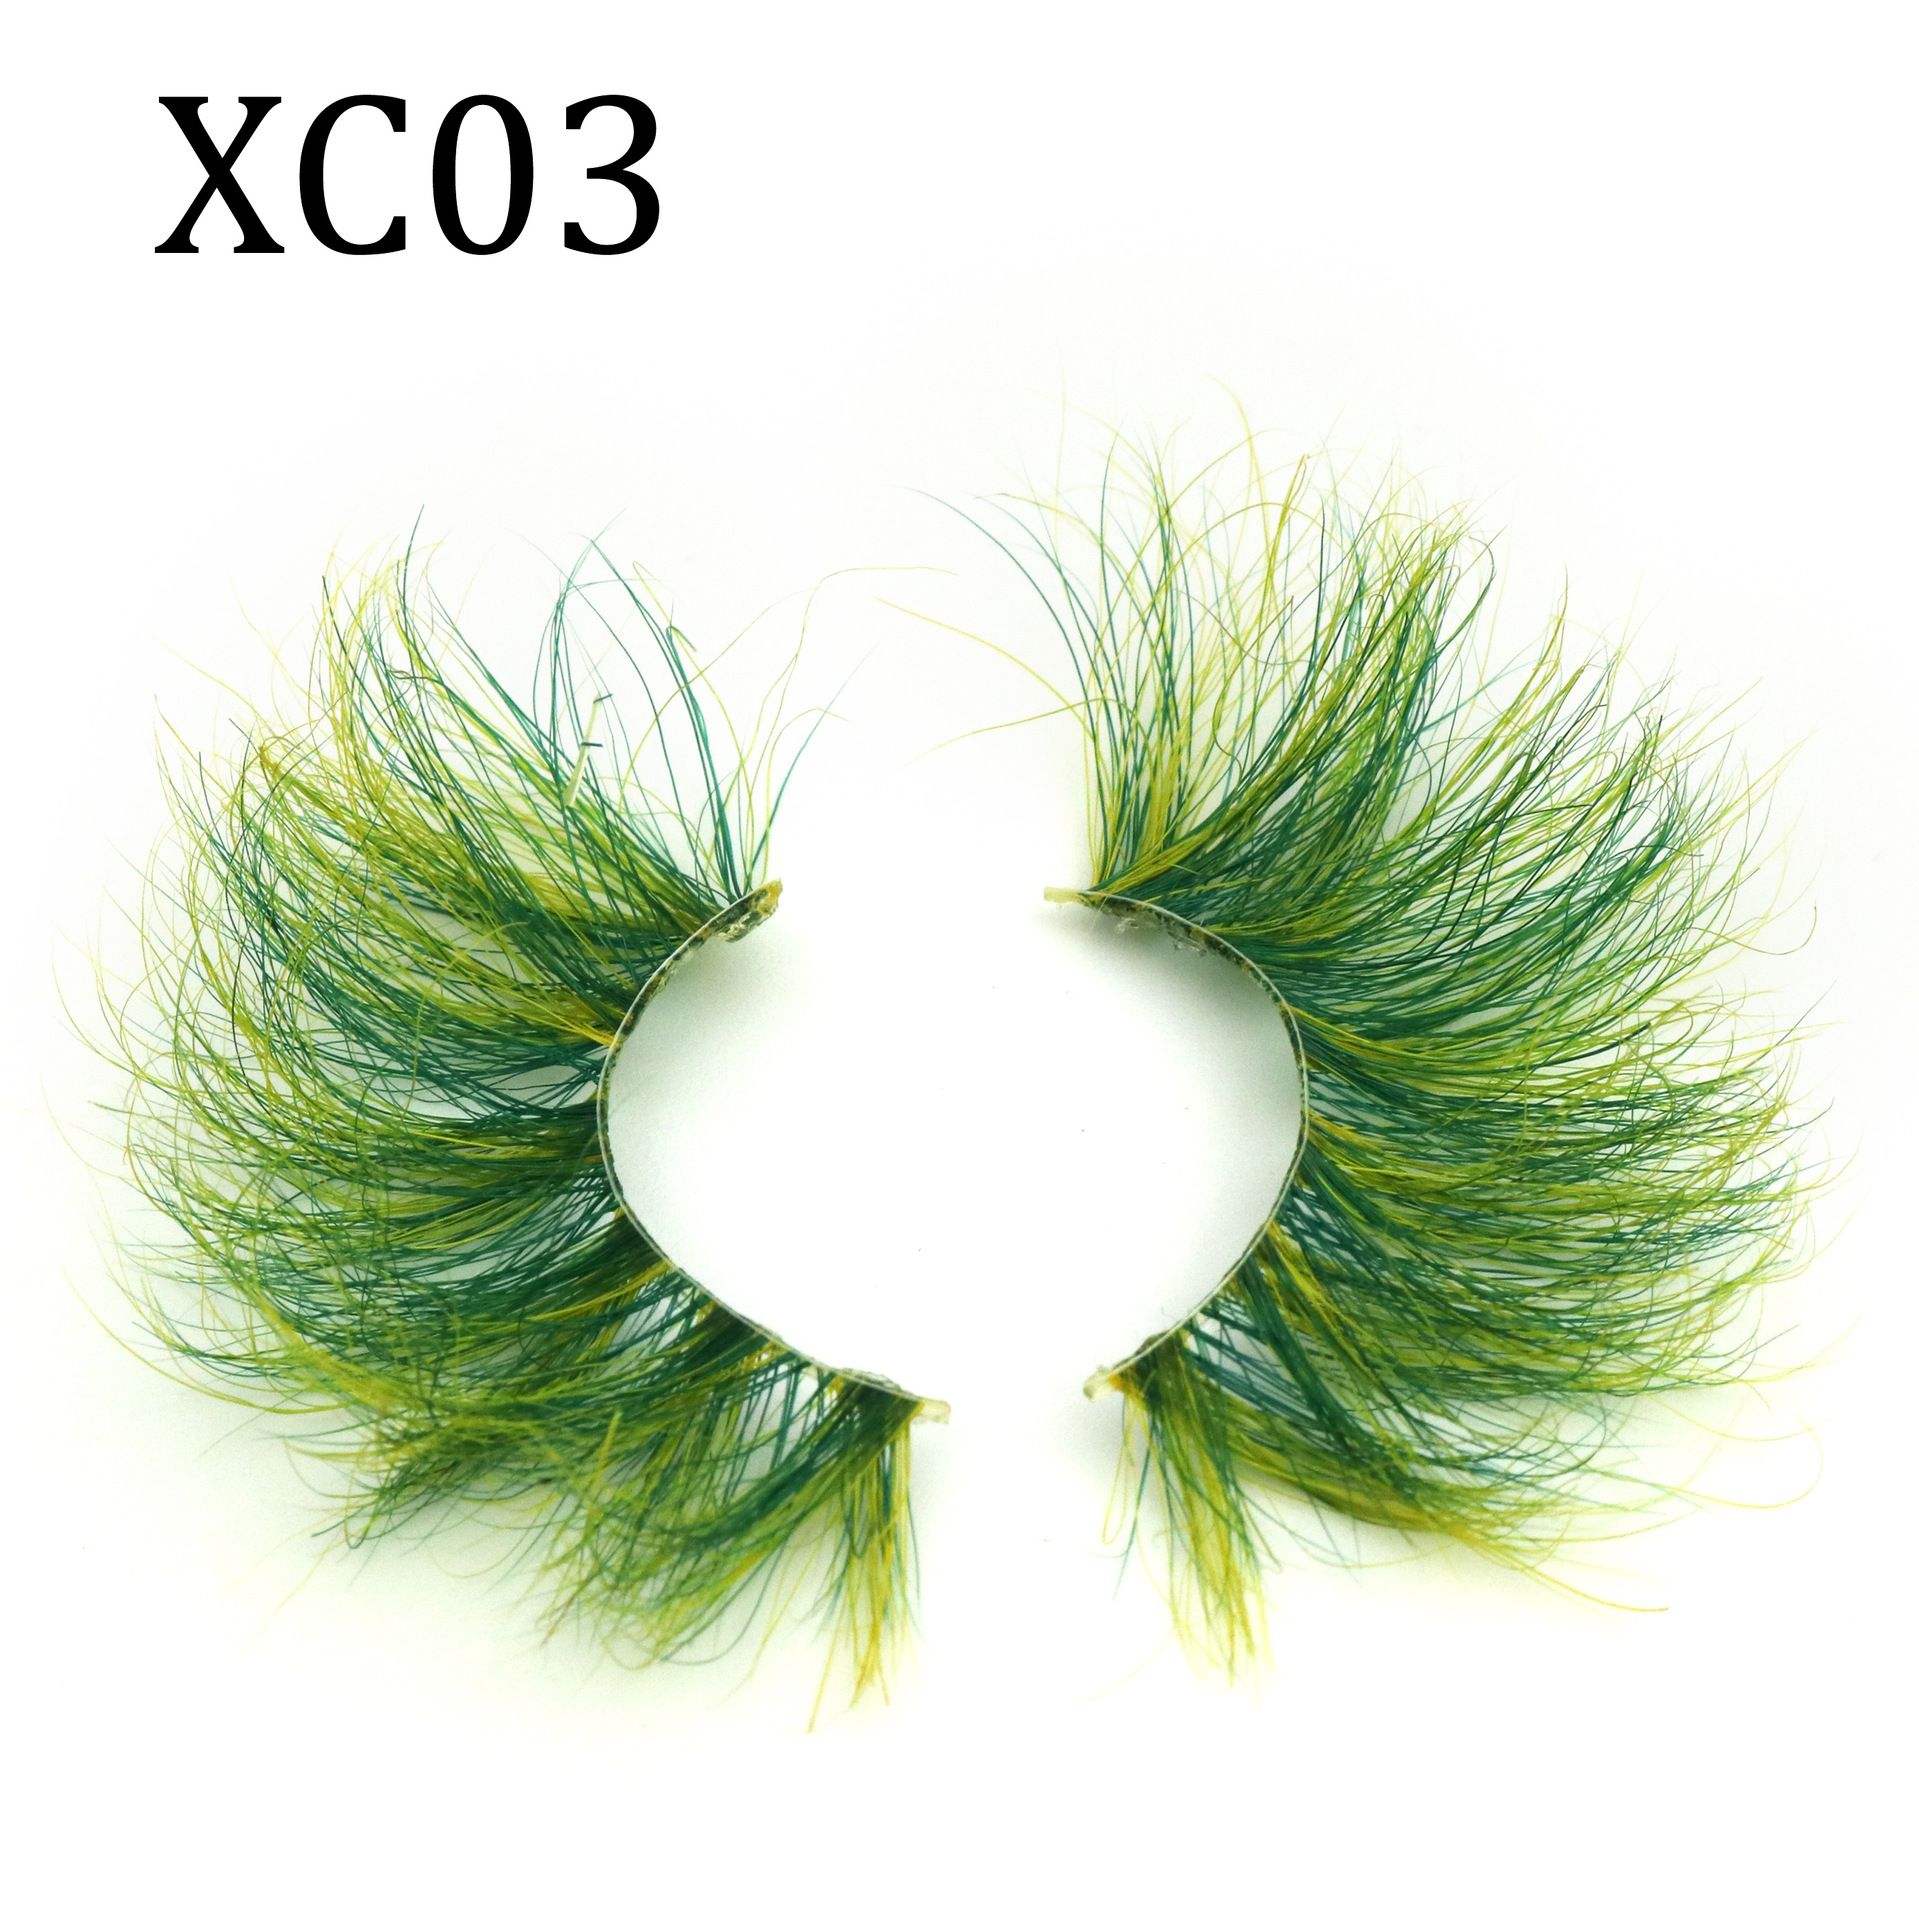 XC03